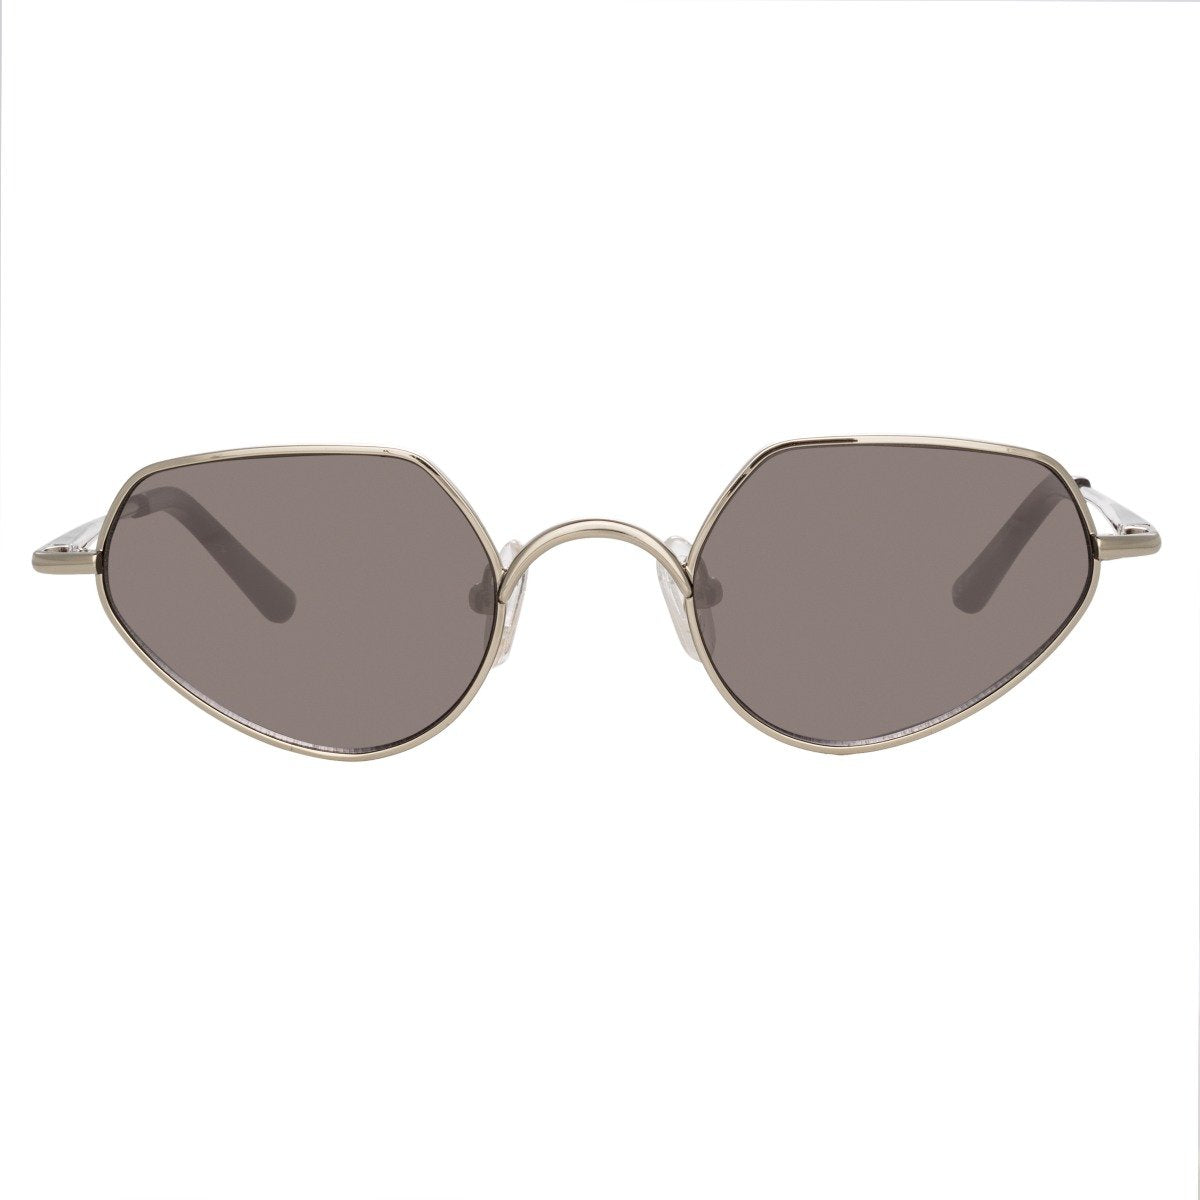 Color_DVN176C1SUN - Dries Van Noten 176 C1 Cat Eye Sunglasses